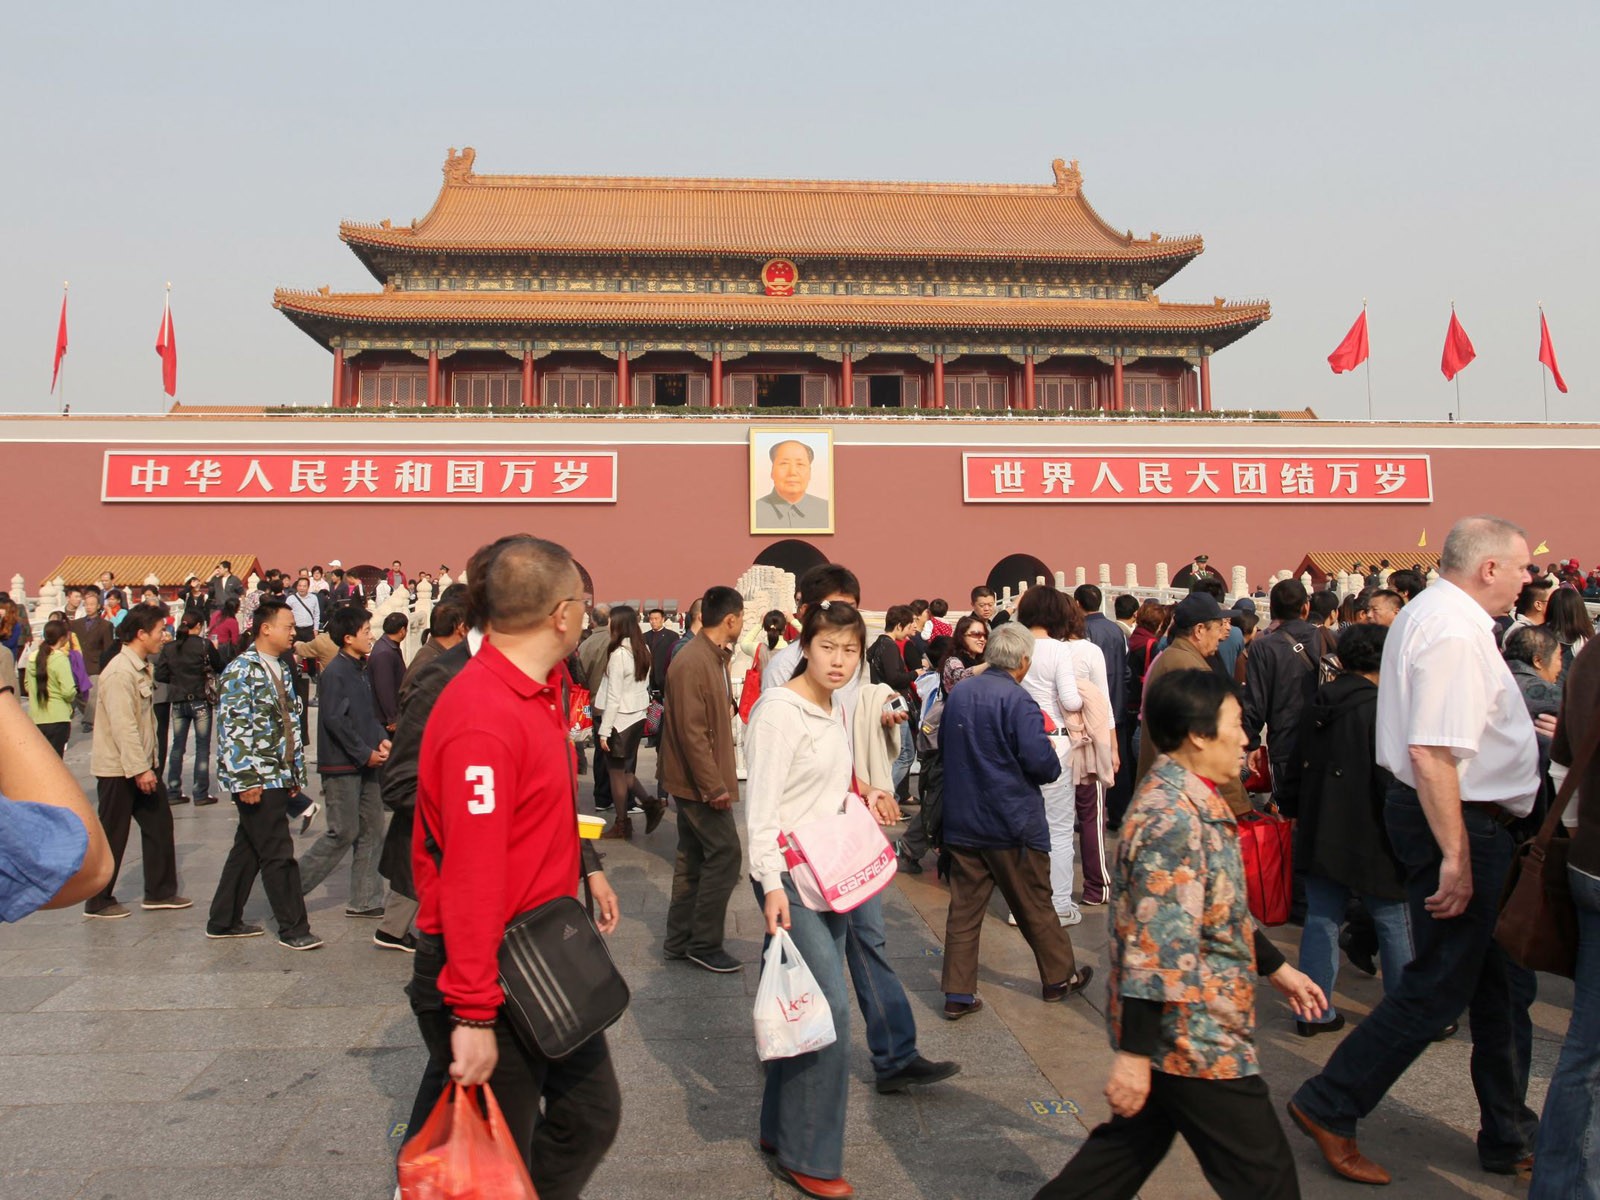 Tour Beijing - Platz des Himmlischen Friedens (GGC Werke) #12 - 1600x1200